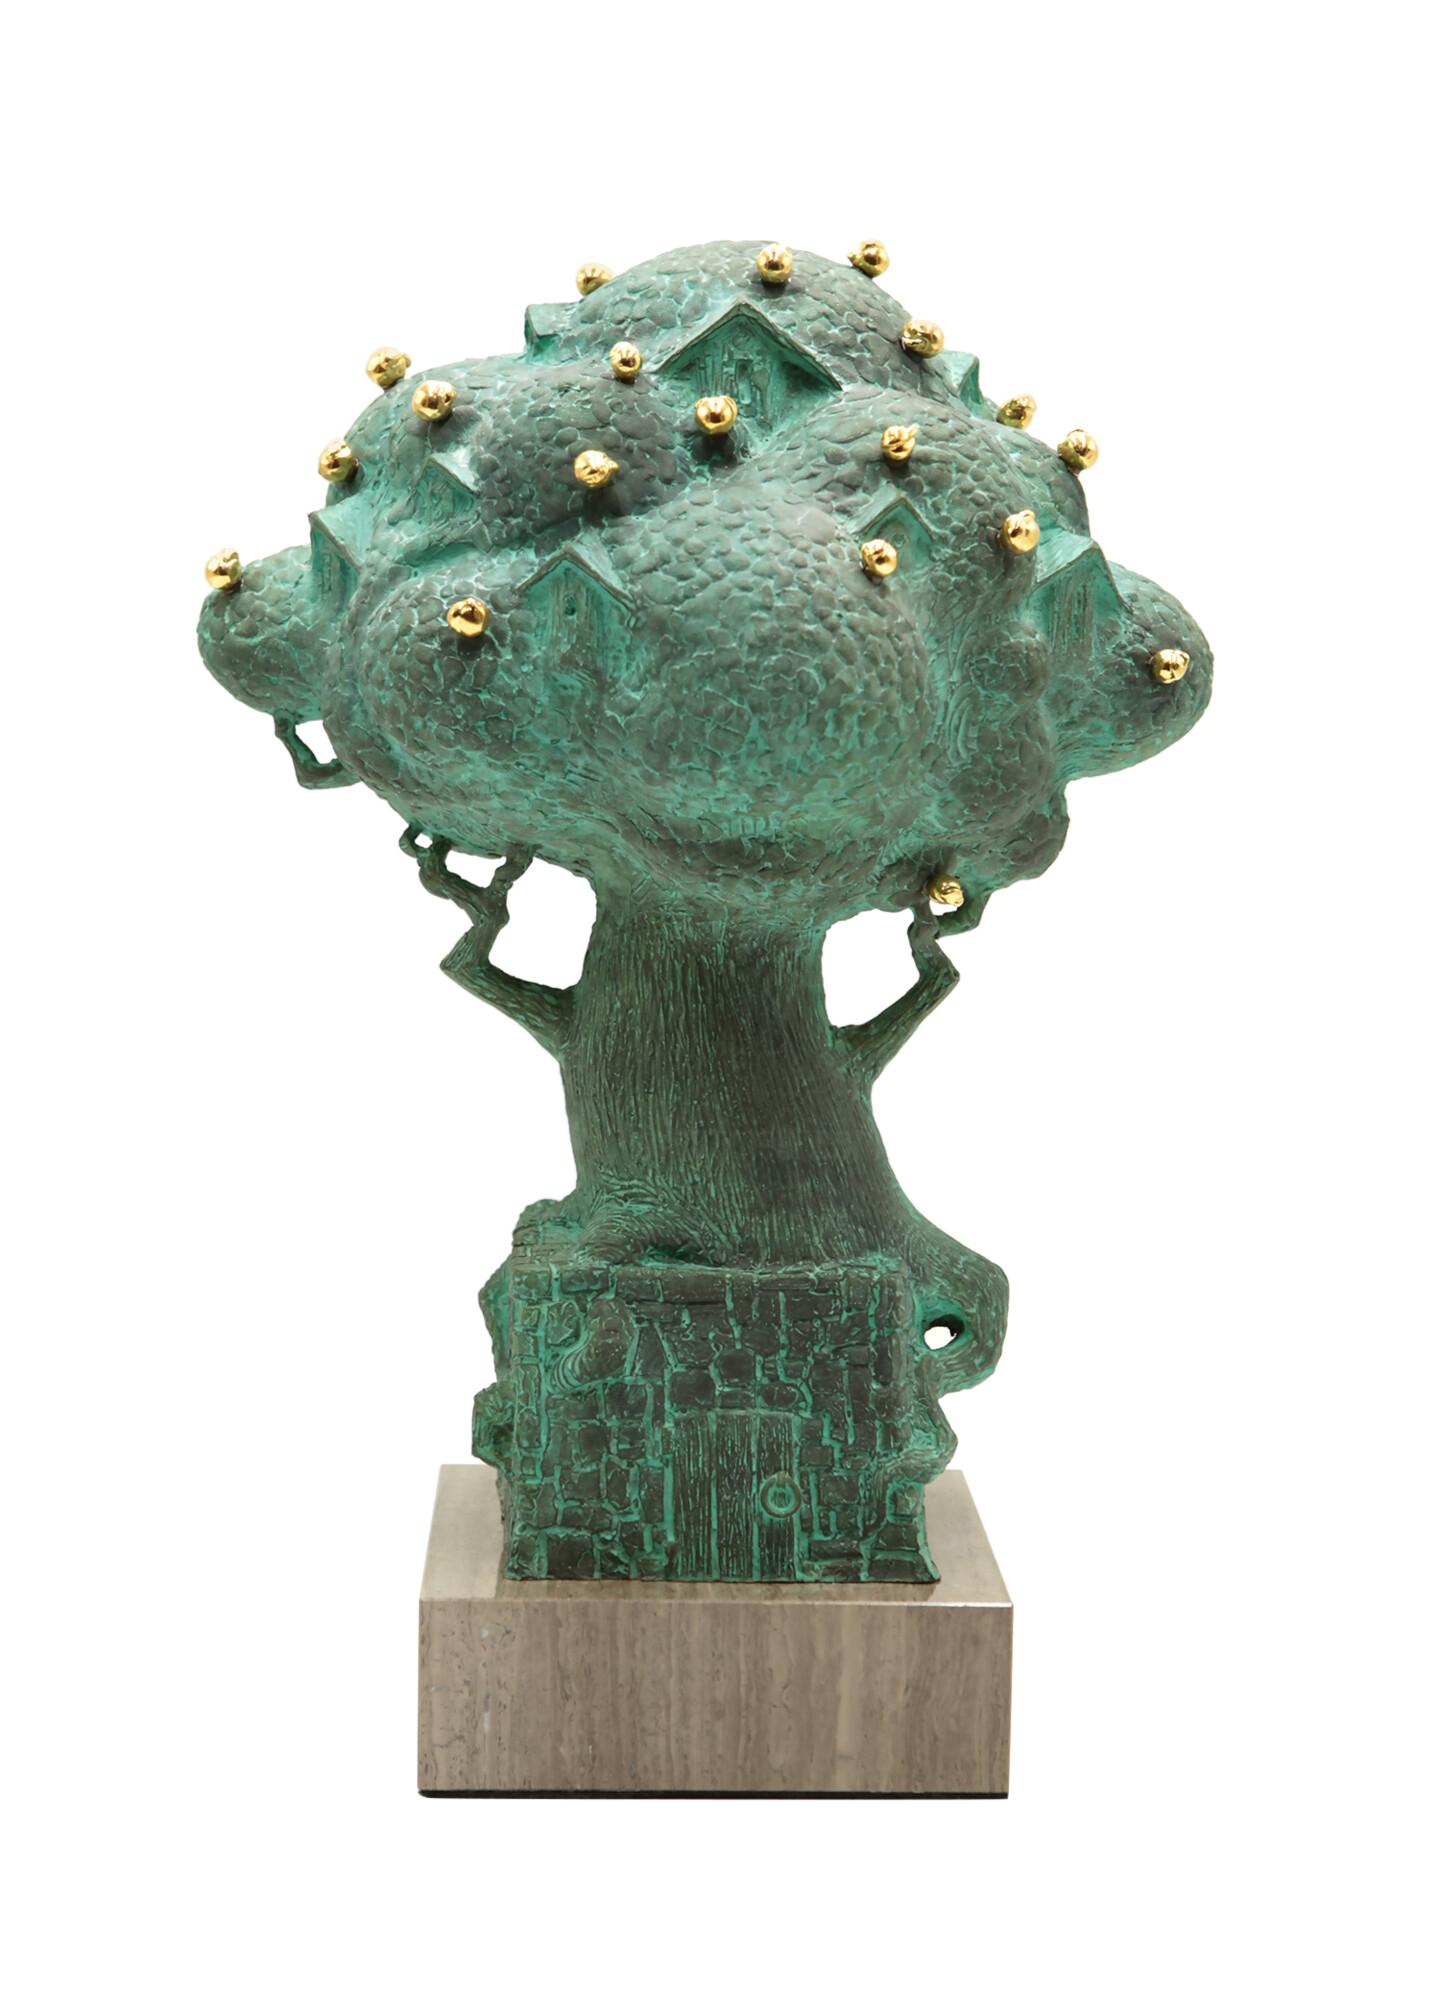 Volodymyr MYKYTENKO Figurative Sculpture – Paradiesbaum, Bronzeskulptur von Volodymyr Mykytenko, 2013